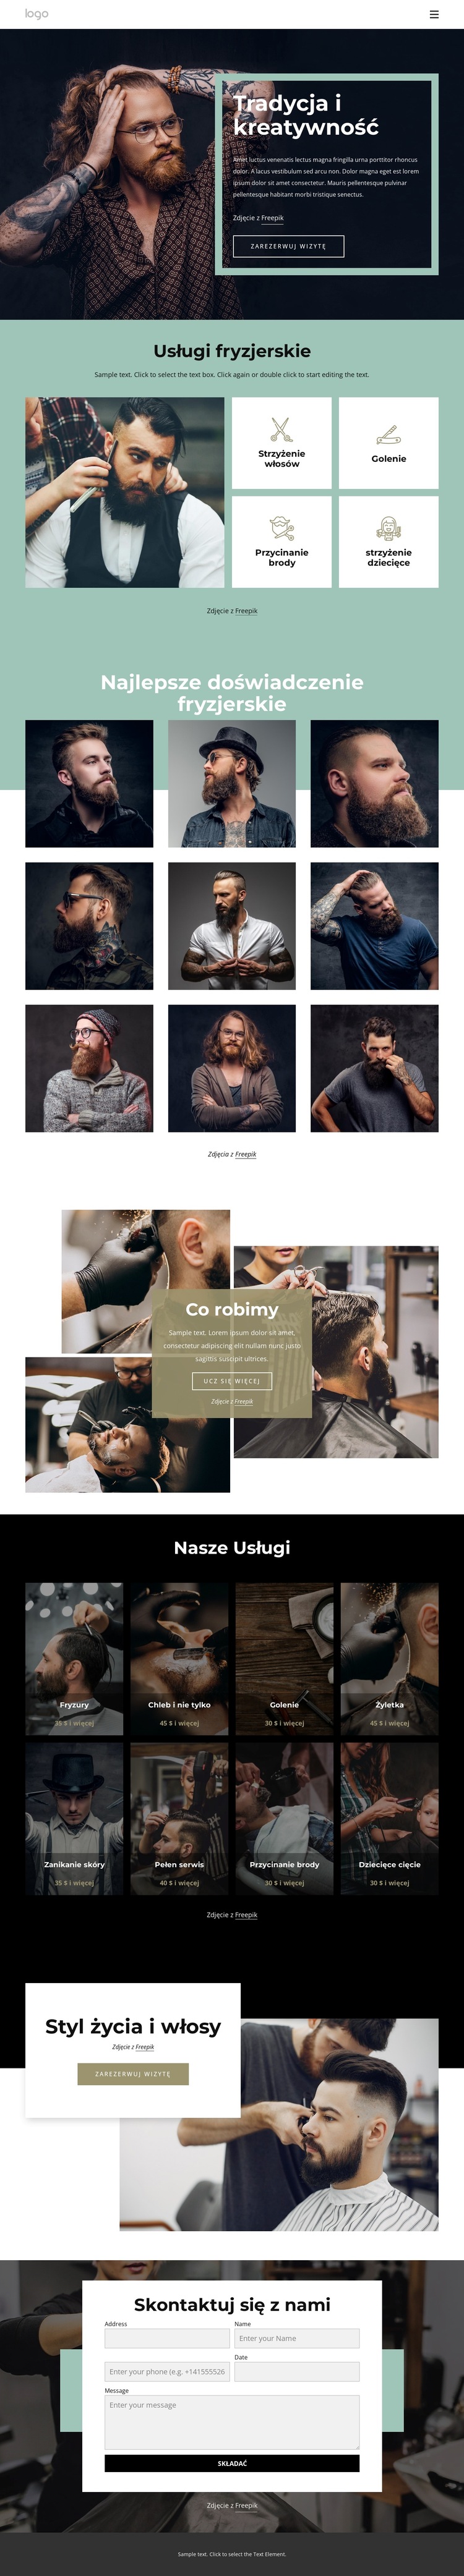 Ogólnodostępny salon fryzjerski Szablon witryny sieci Web